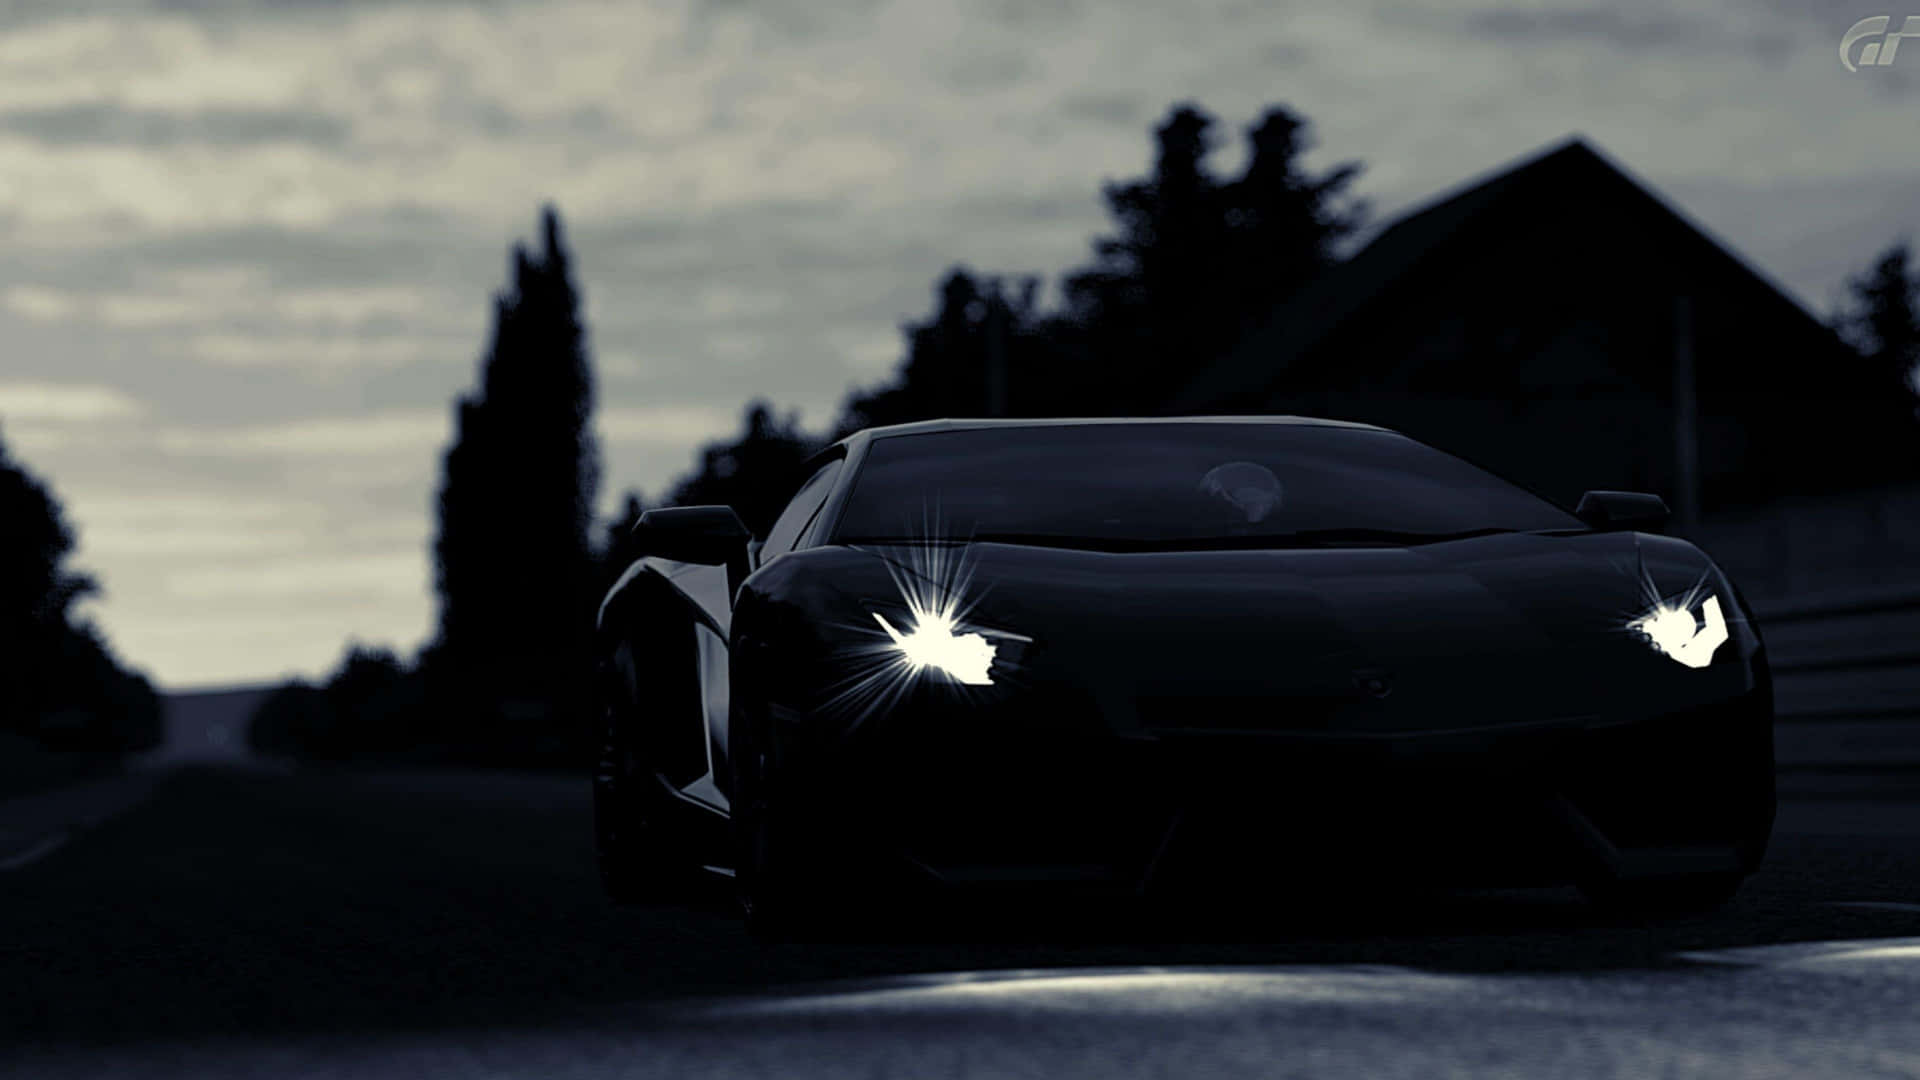 Ejlige Til At Eje Vejen I En 4k Lamborghini